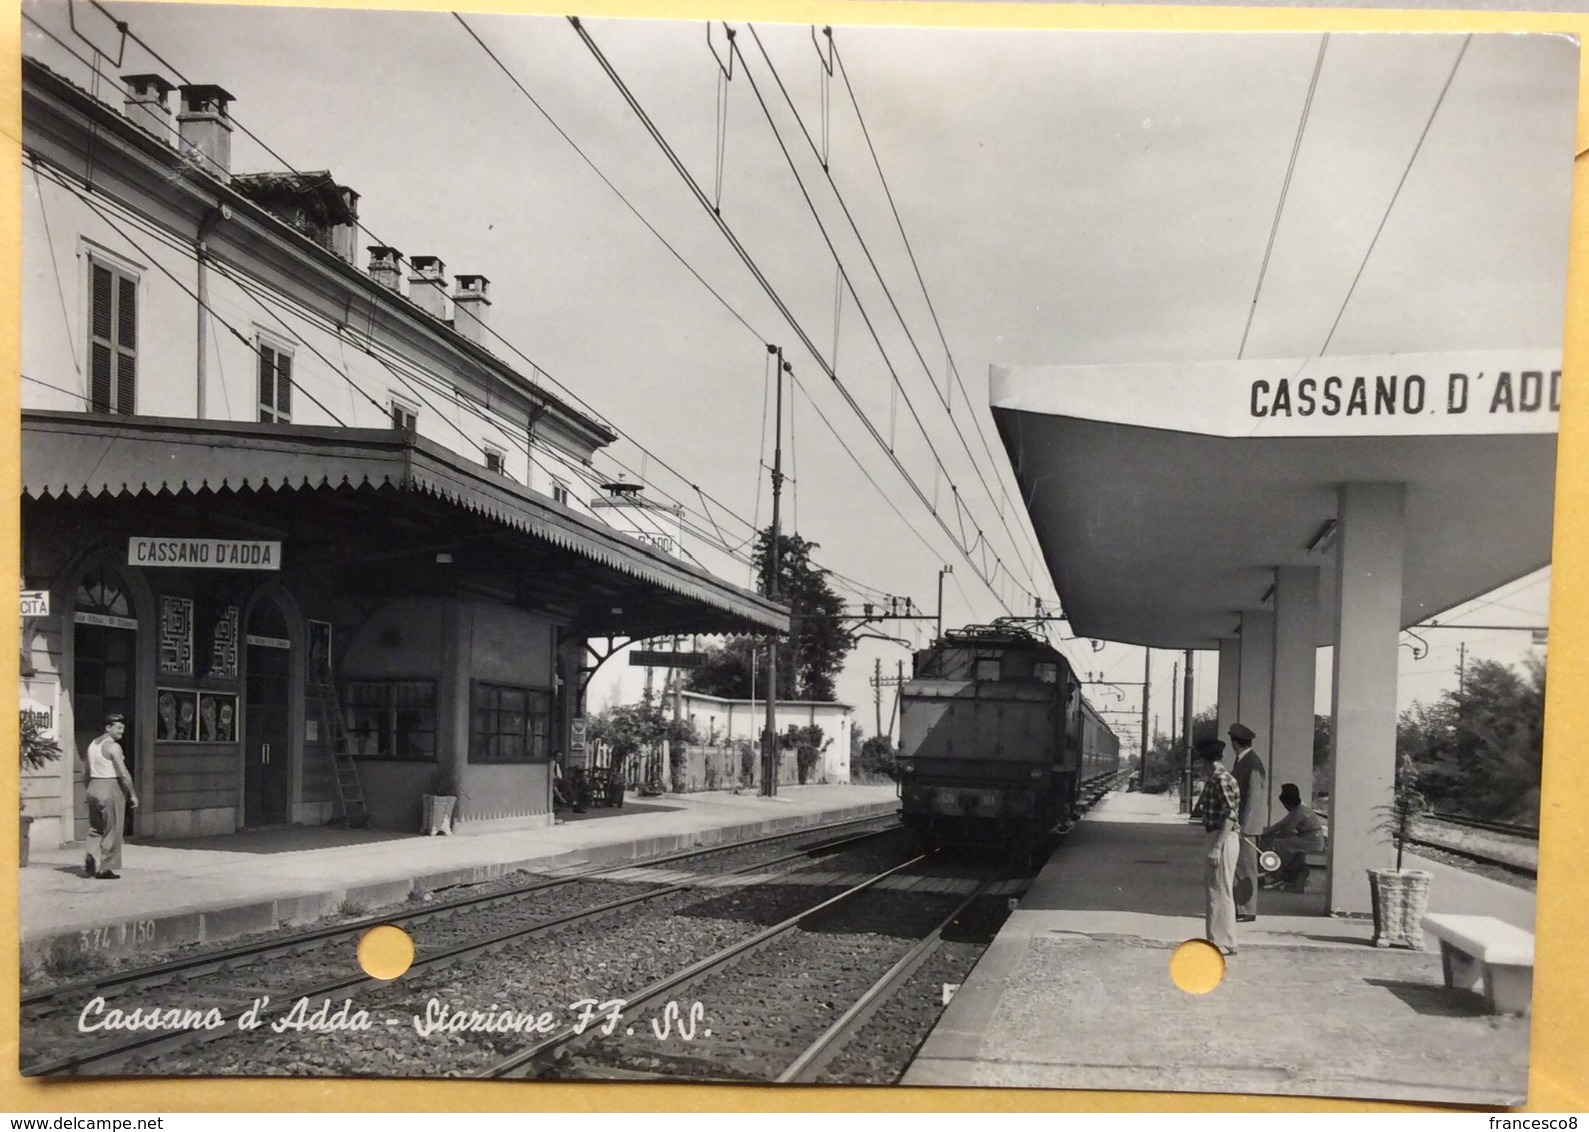 1956 Cassano D’Adda Stazione Ferroviaria / Milano - Stations With Trains